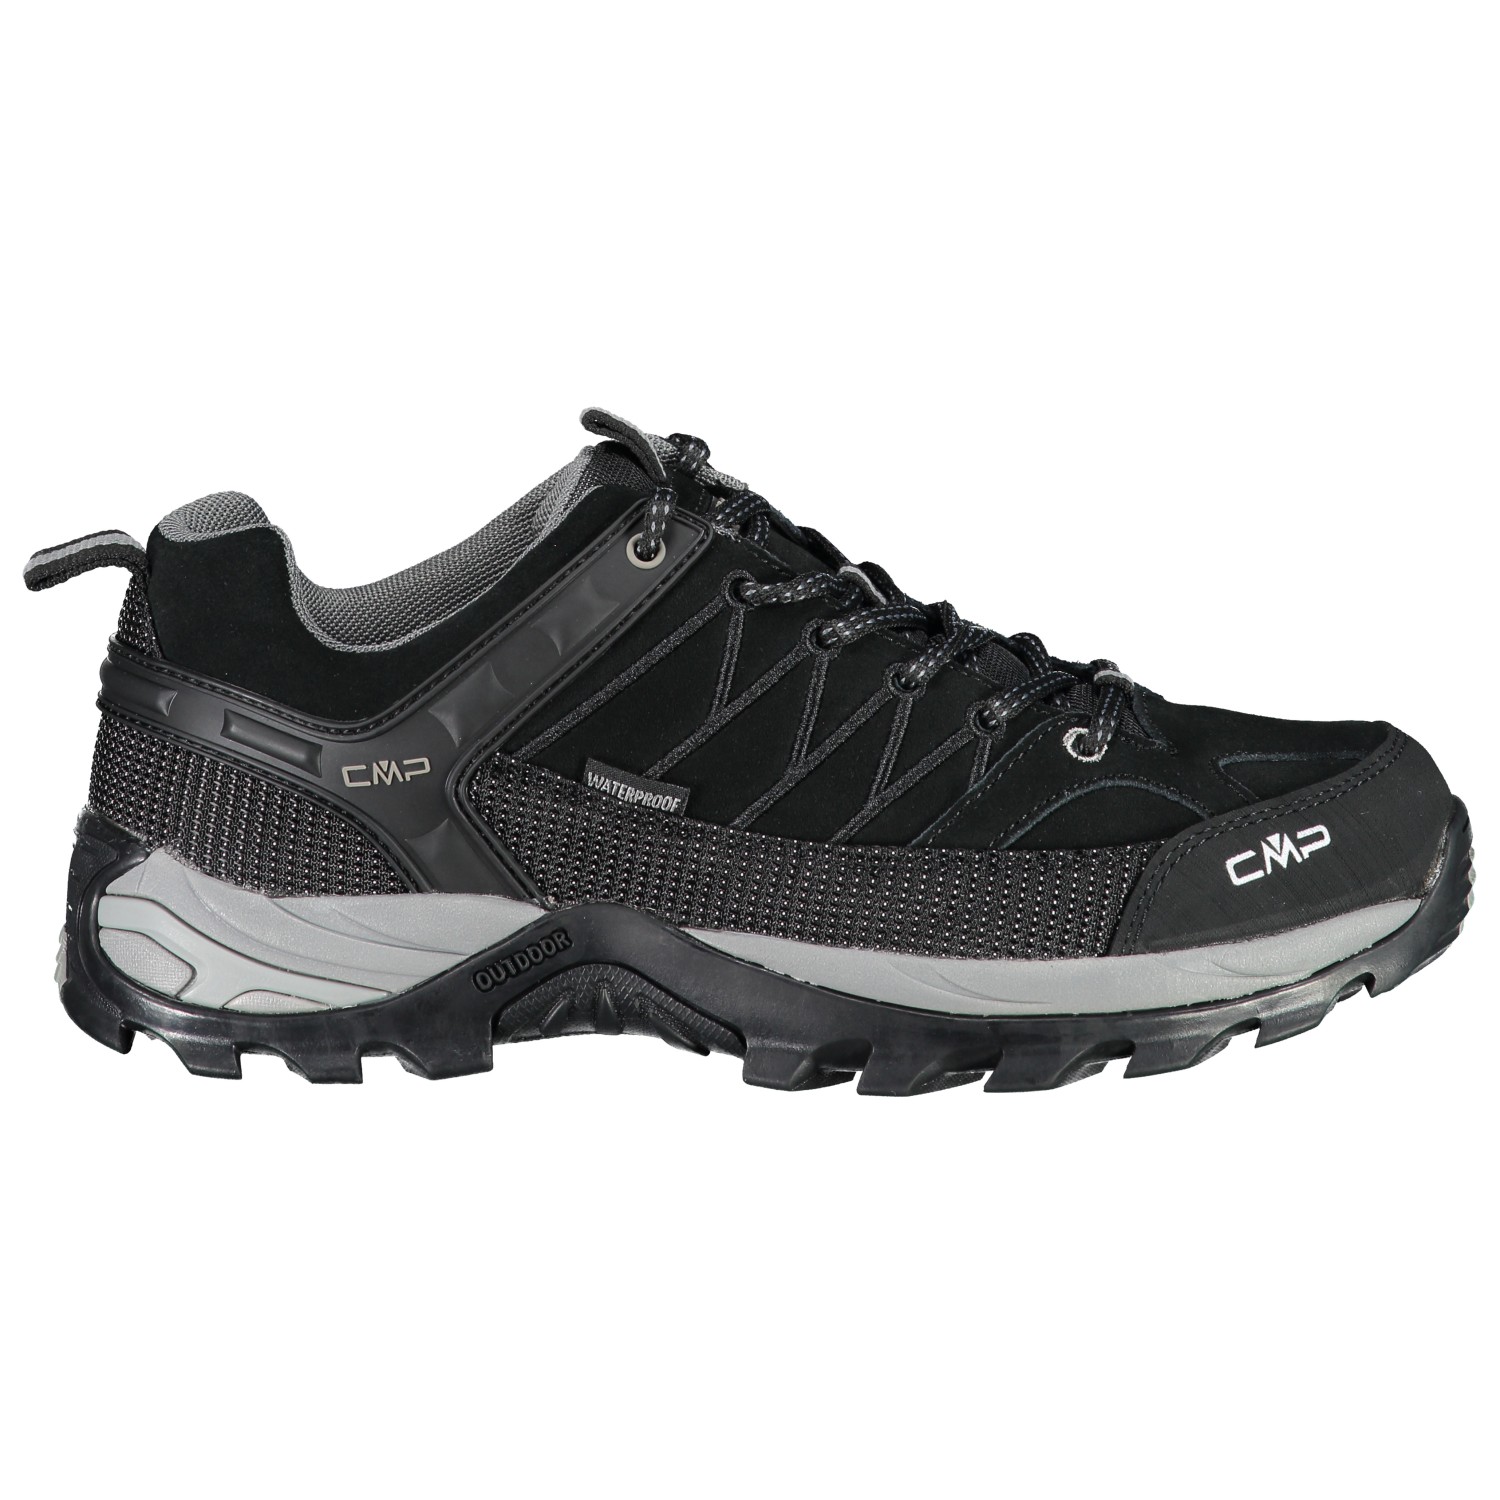 Мультиспортивная обувь Cmp Rigel Low Trekking Shoes Waterproof, цвет Nero/Grey